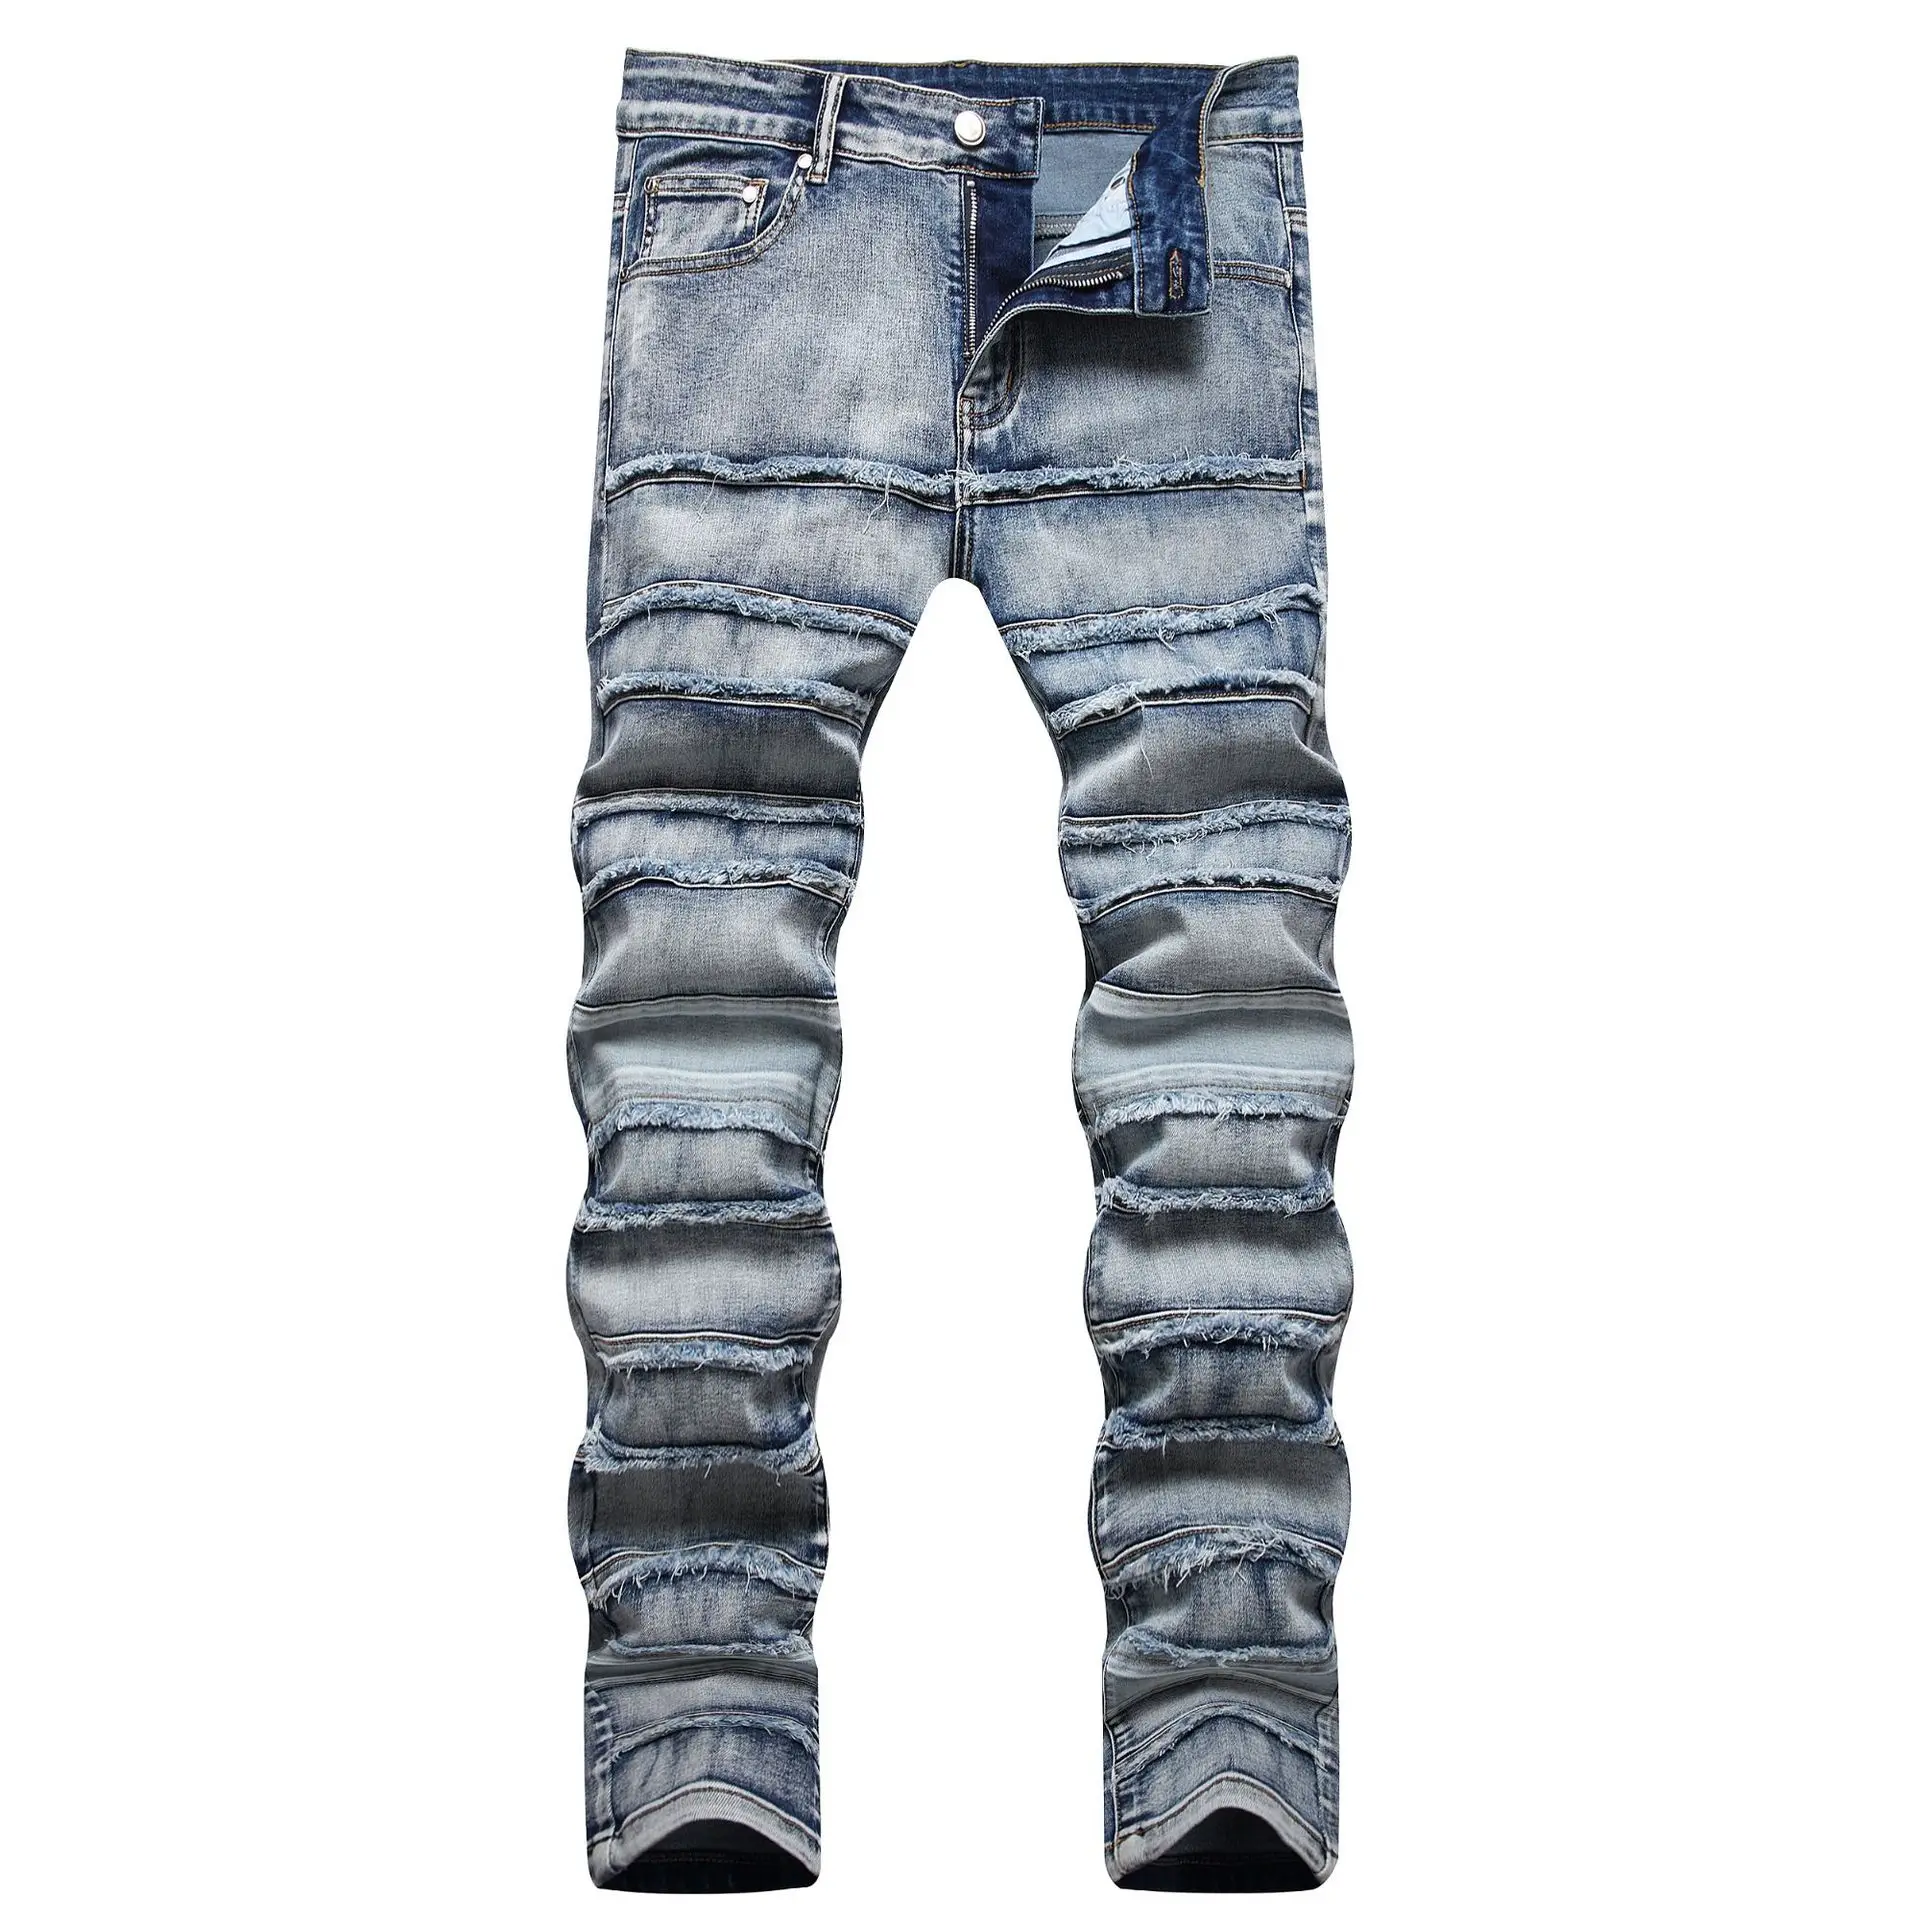 jeans INS hip-hop crânio rua tendência homens maré alta rua furo stretch jeans pé pequeno de rock da maré Slim explosão bordado calças Imagem 2